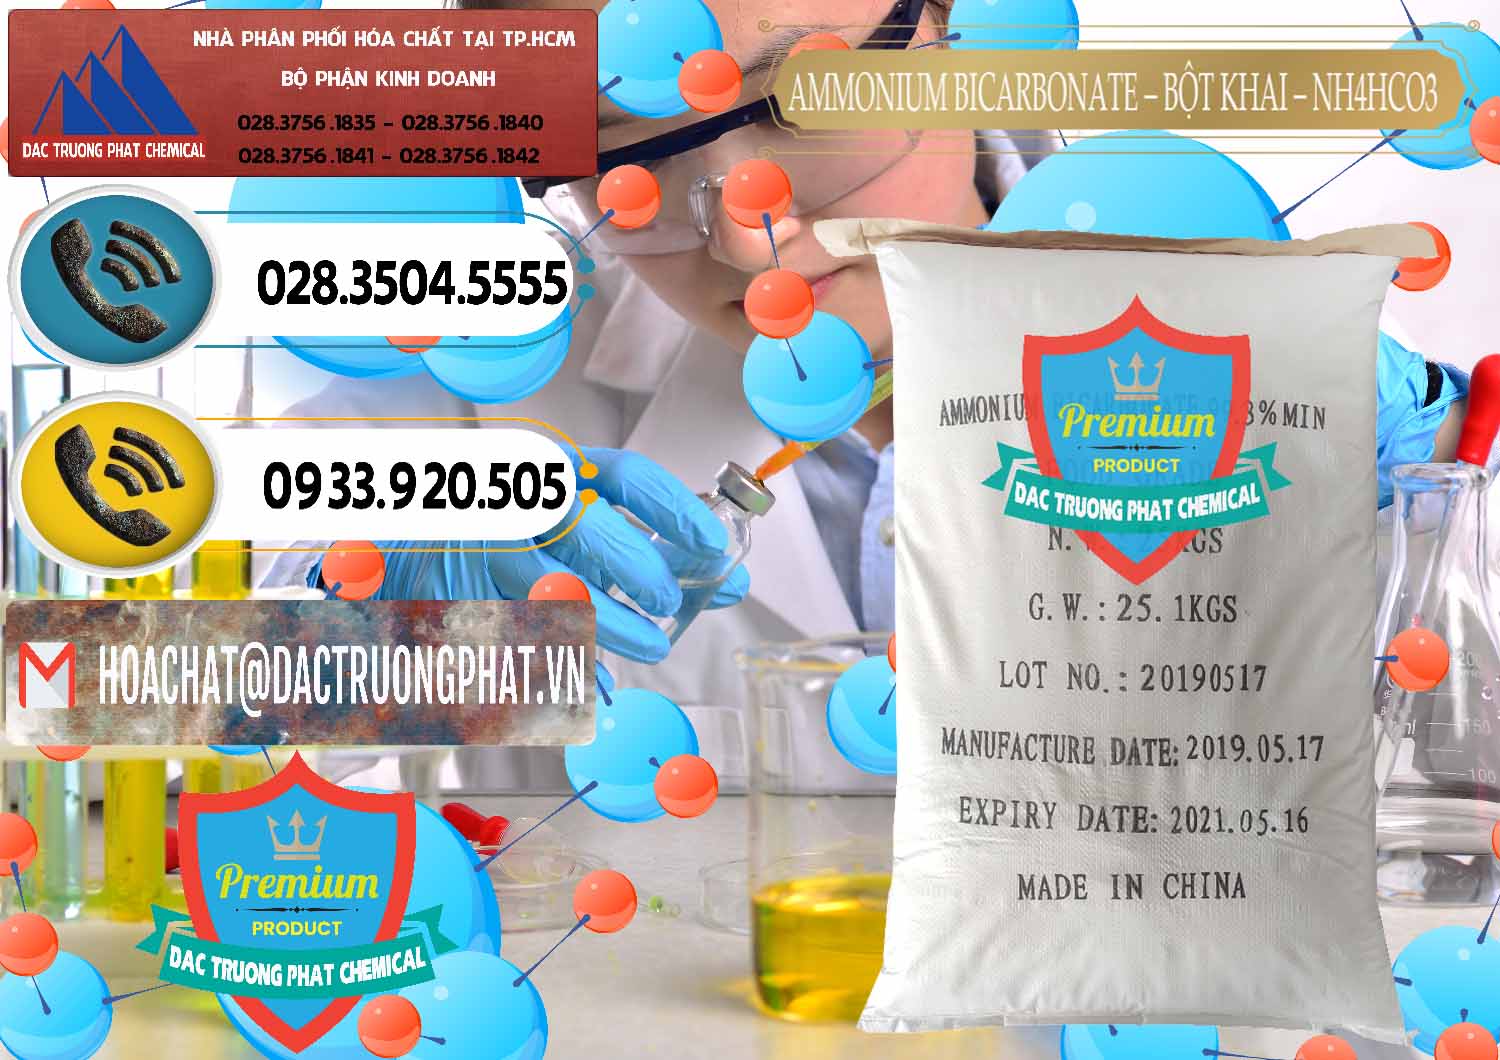 Nơi bán và cung cấp Ammonium Bicarbonate - Bột Khai Food Grade Trung Quốc China - 0018 - Đơn vị chuyên kinh doanh - cung cấp hóa chất tại TP.HCM - hoachatdetnhuom.vn